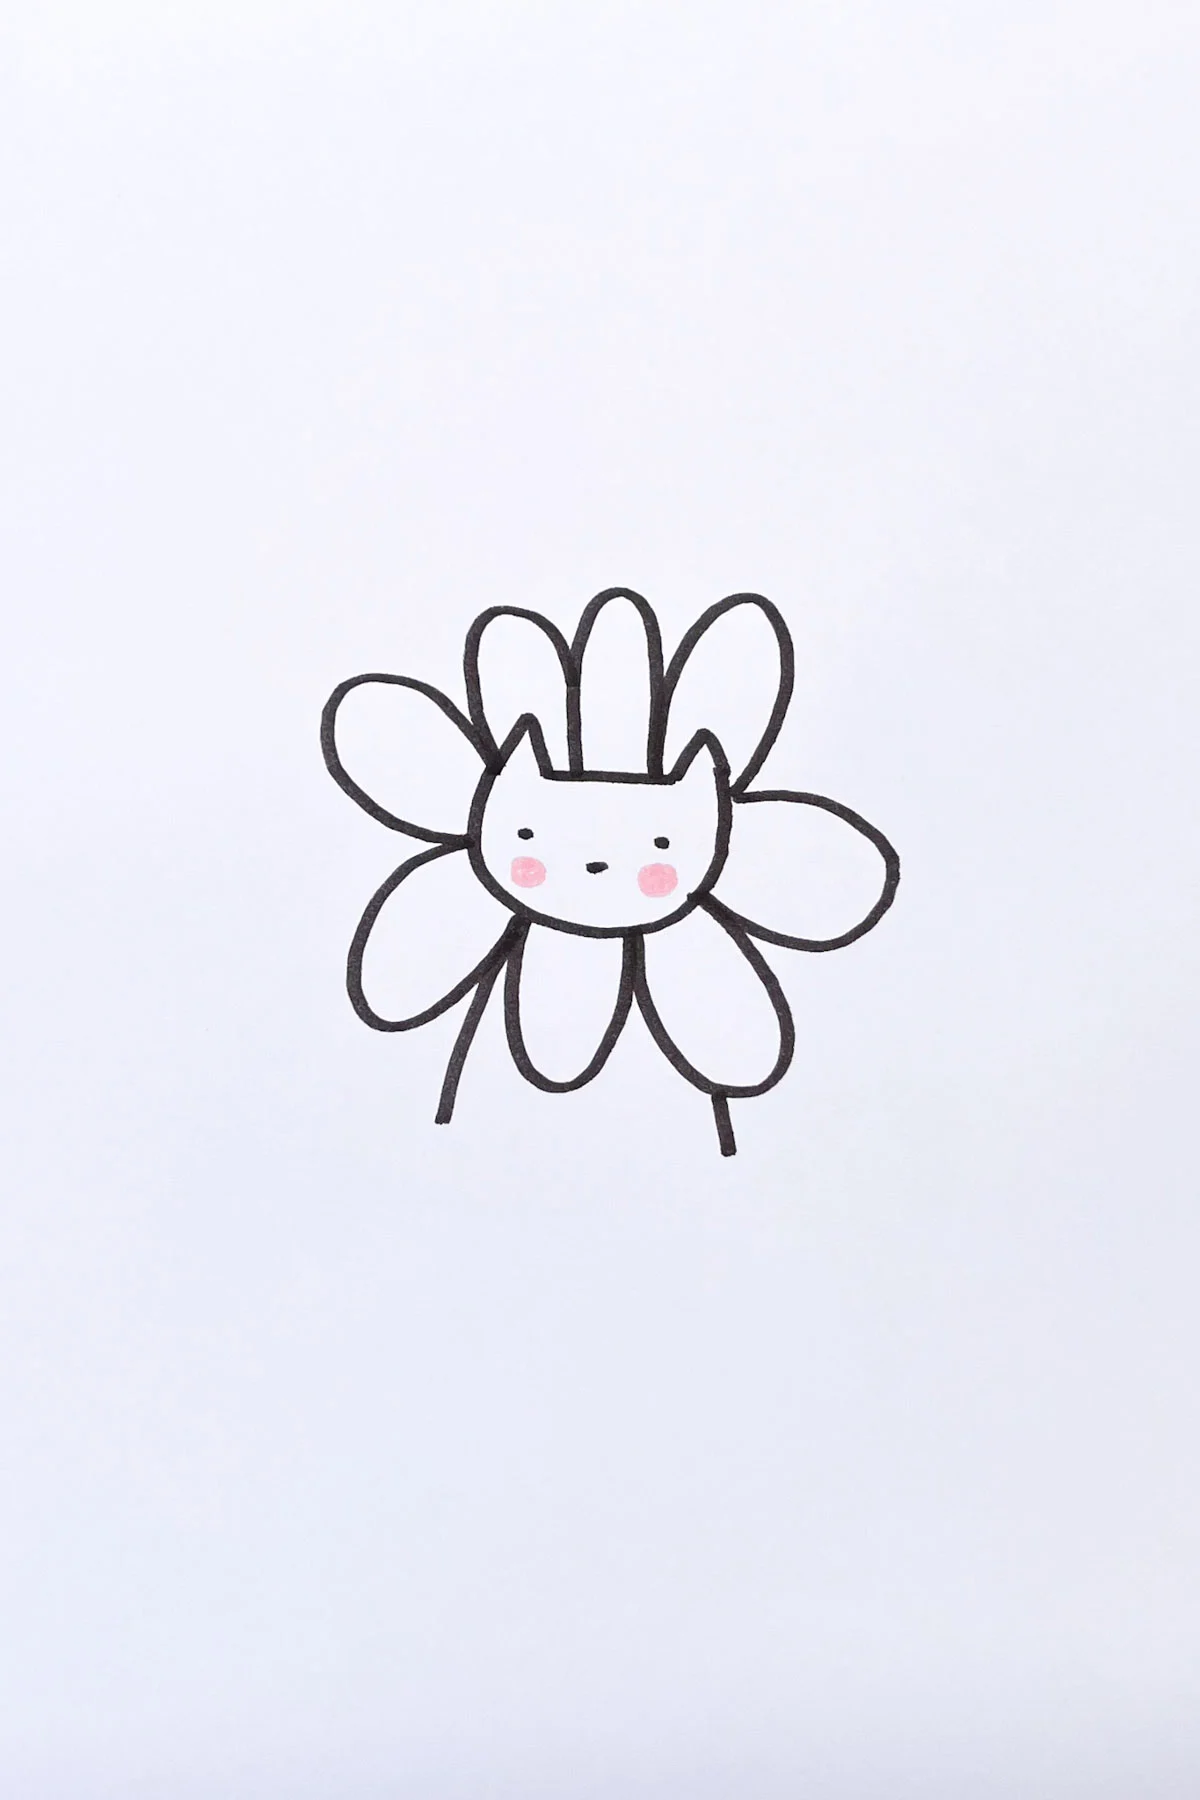 flower cat drawing idea